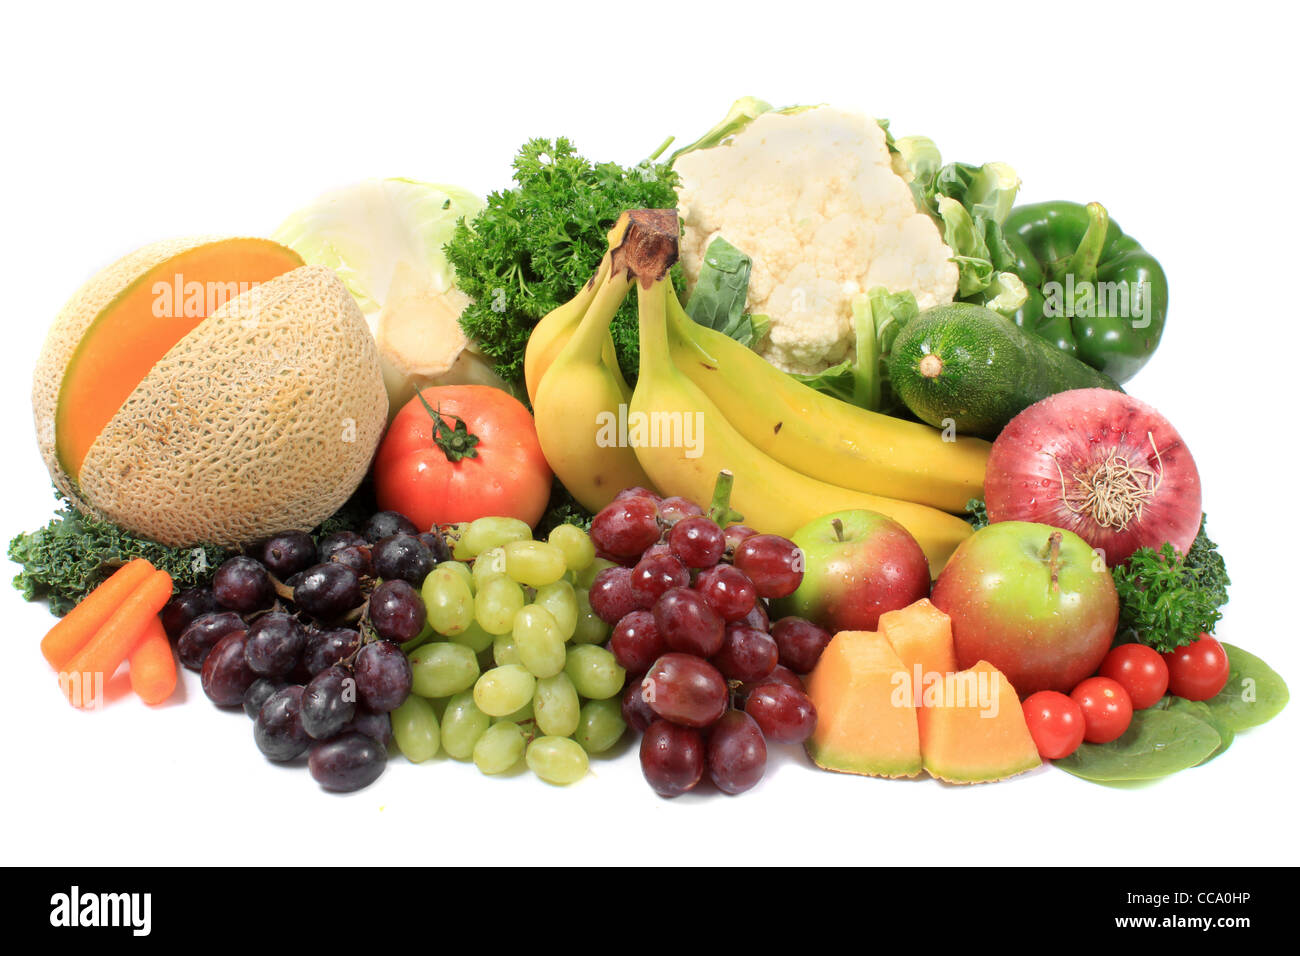 Groupe des fruits et légumes colorés comme les raisins, les pommes, les bananes, et le chou-fleur Banque D'Images